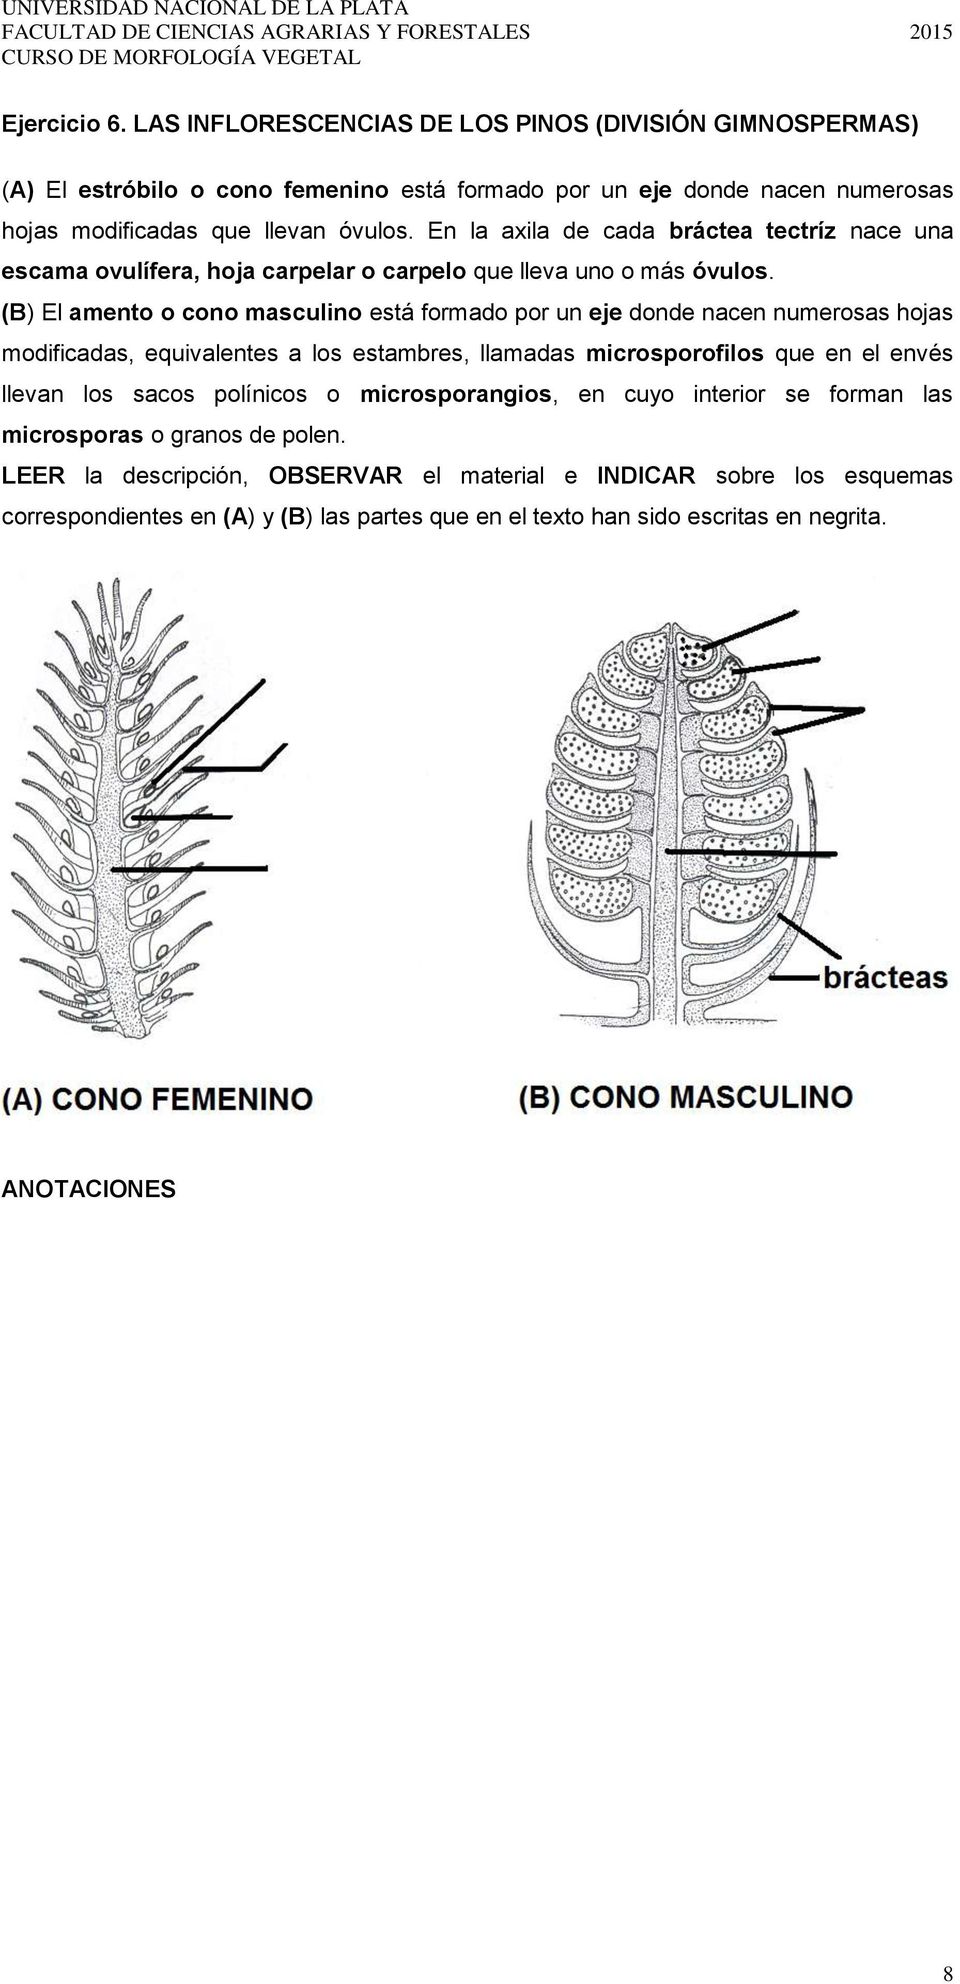 (B) El amento o cono masculino está formado por un eje donde nacen numerosas hojas modificadas, equivalentes a los estambres, llamadas microsporofilos que en el envés llevan los sacos